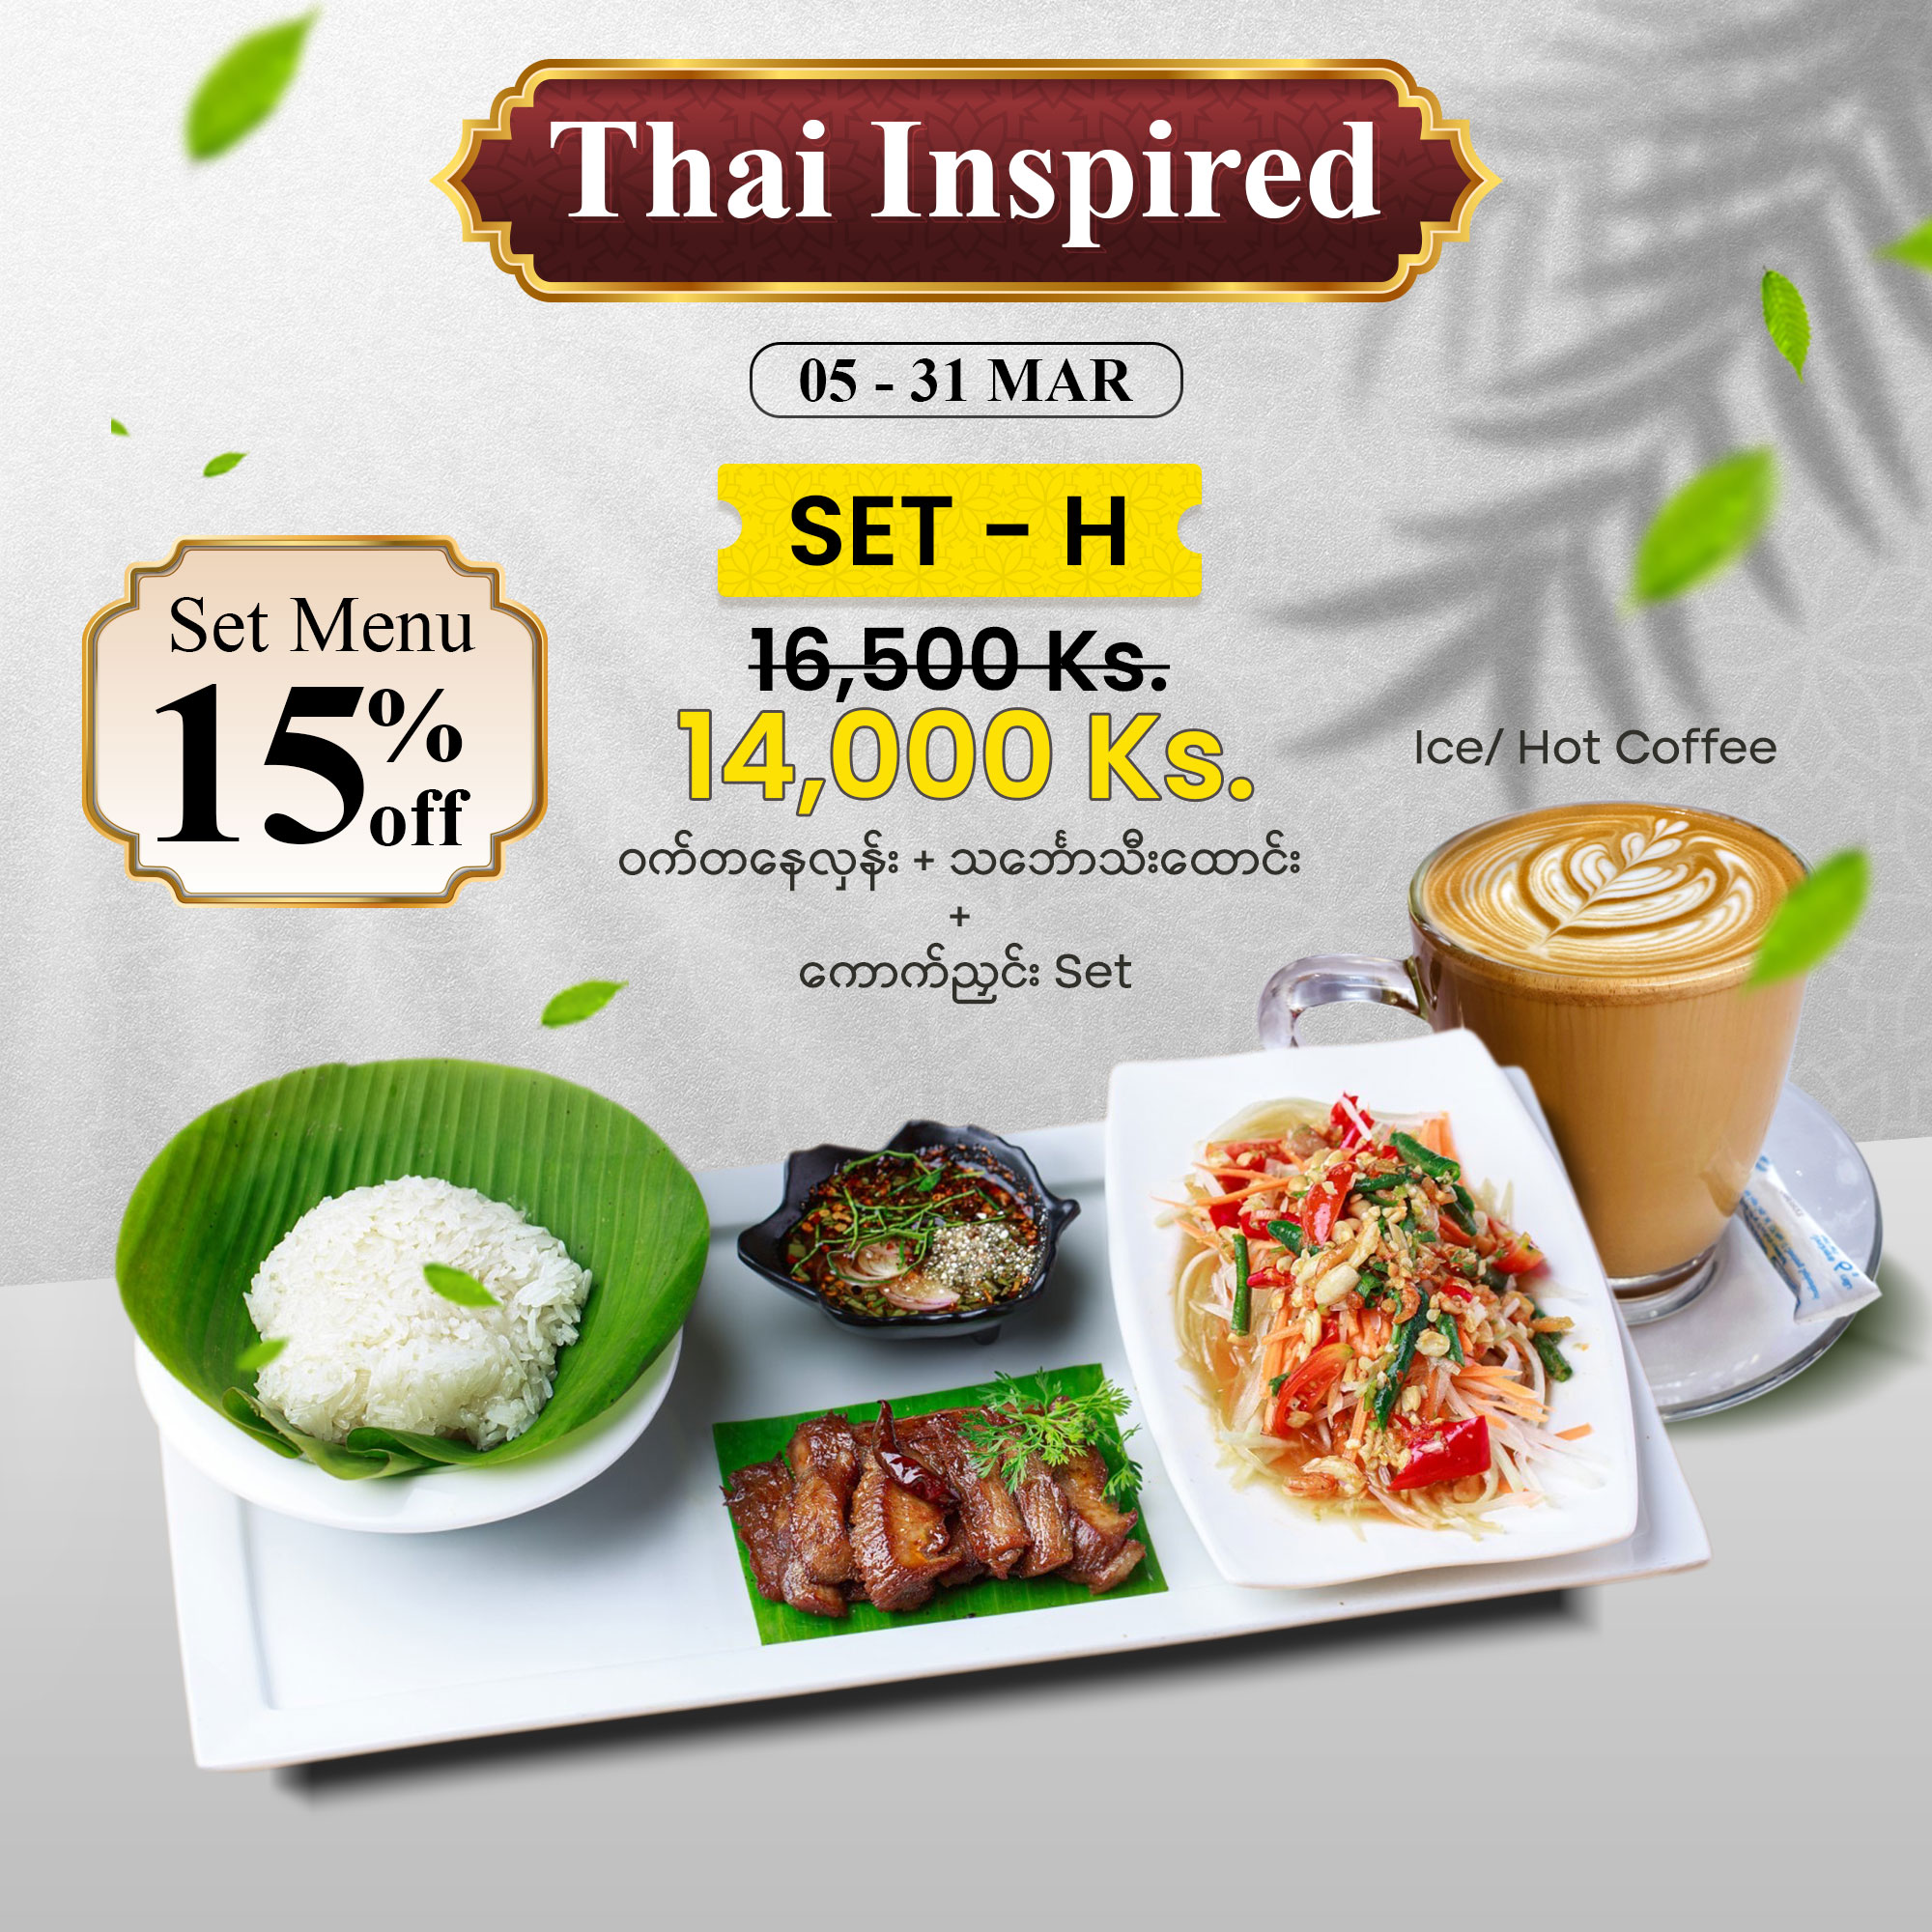 Thai Inspired